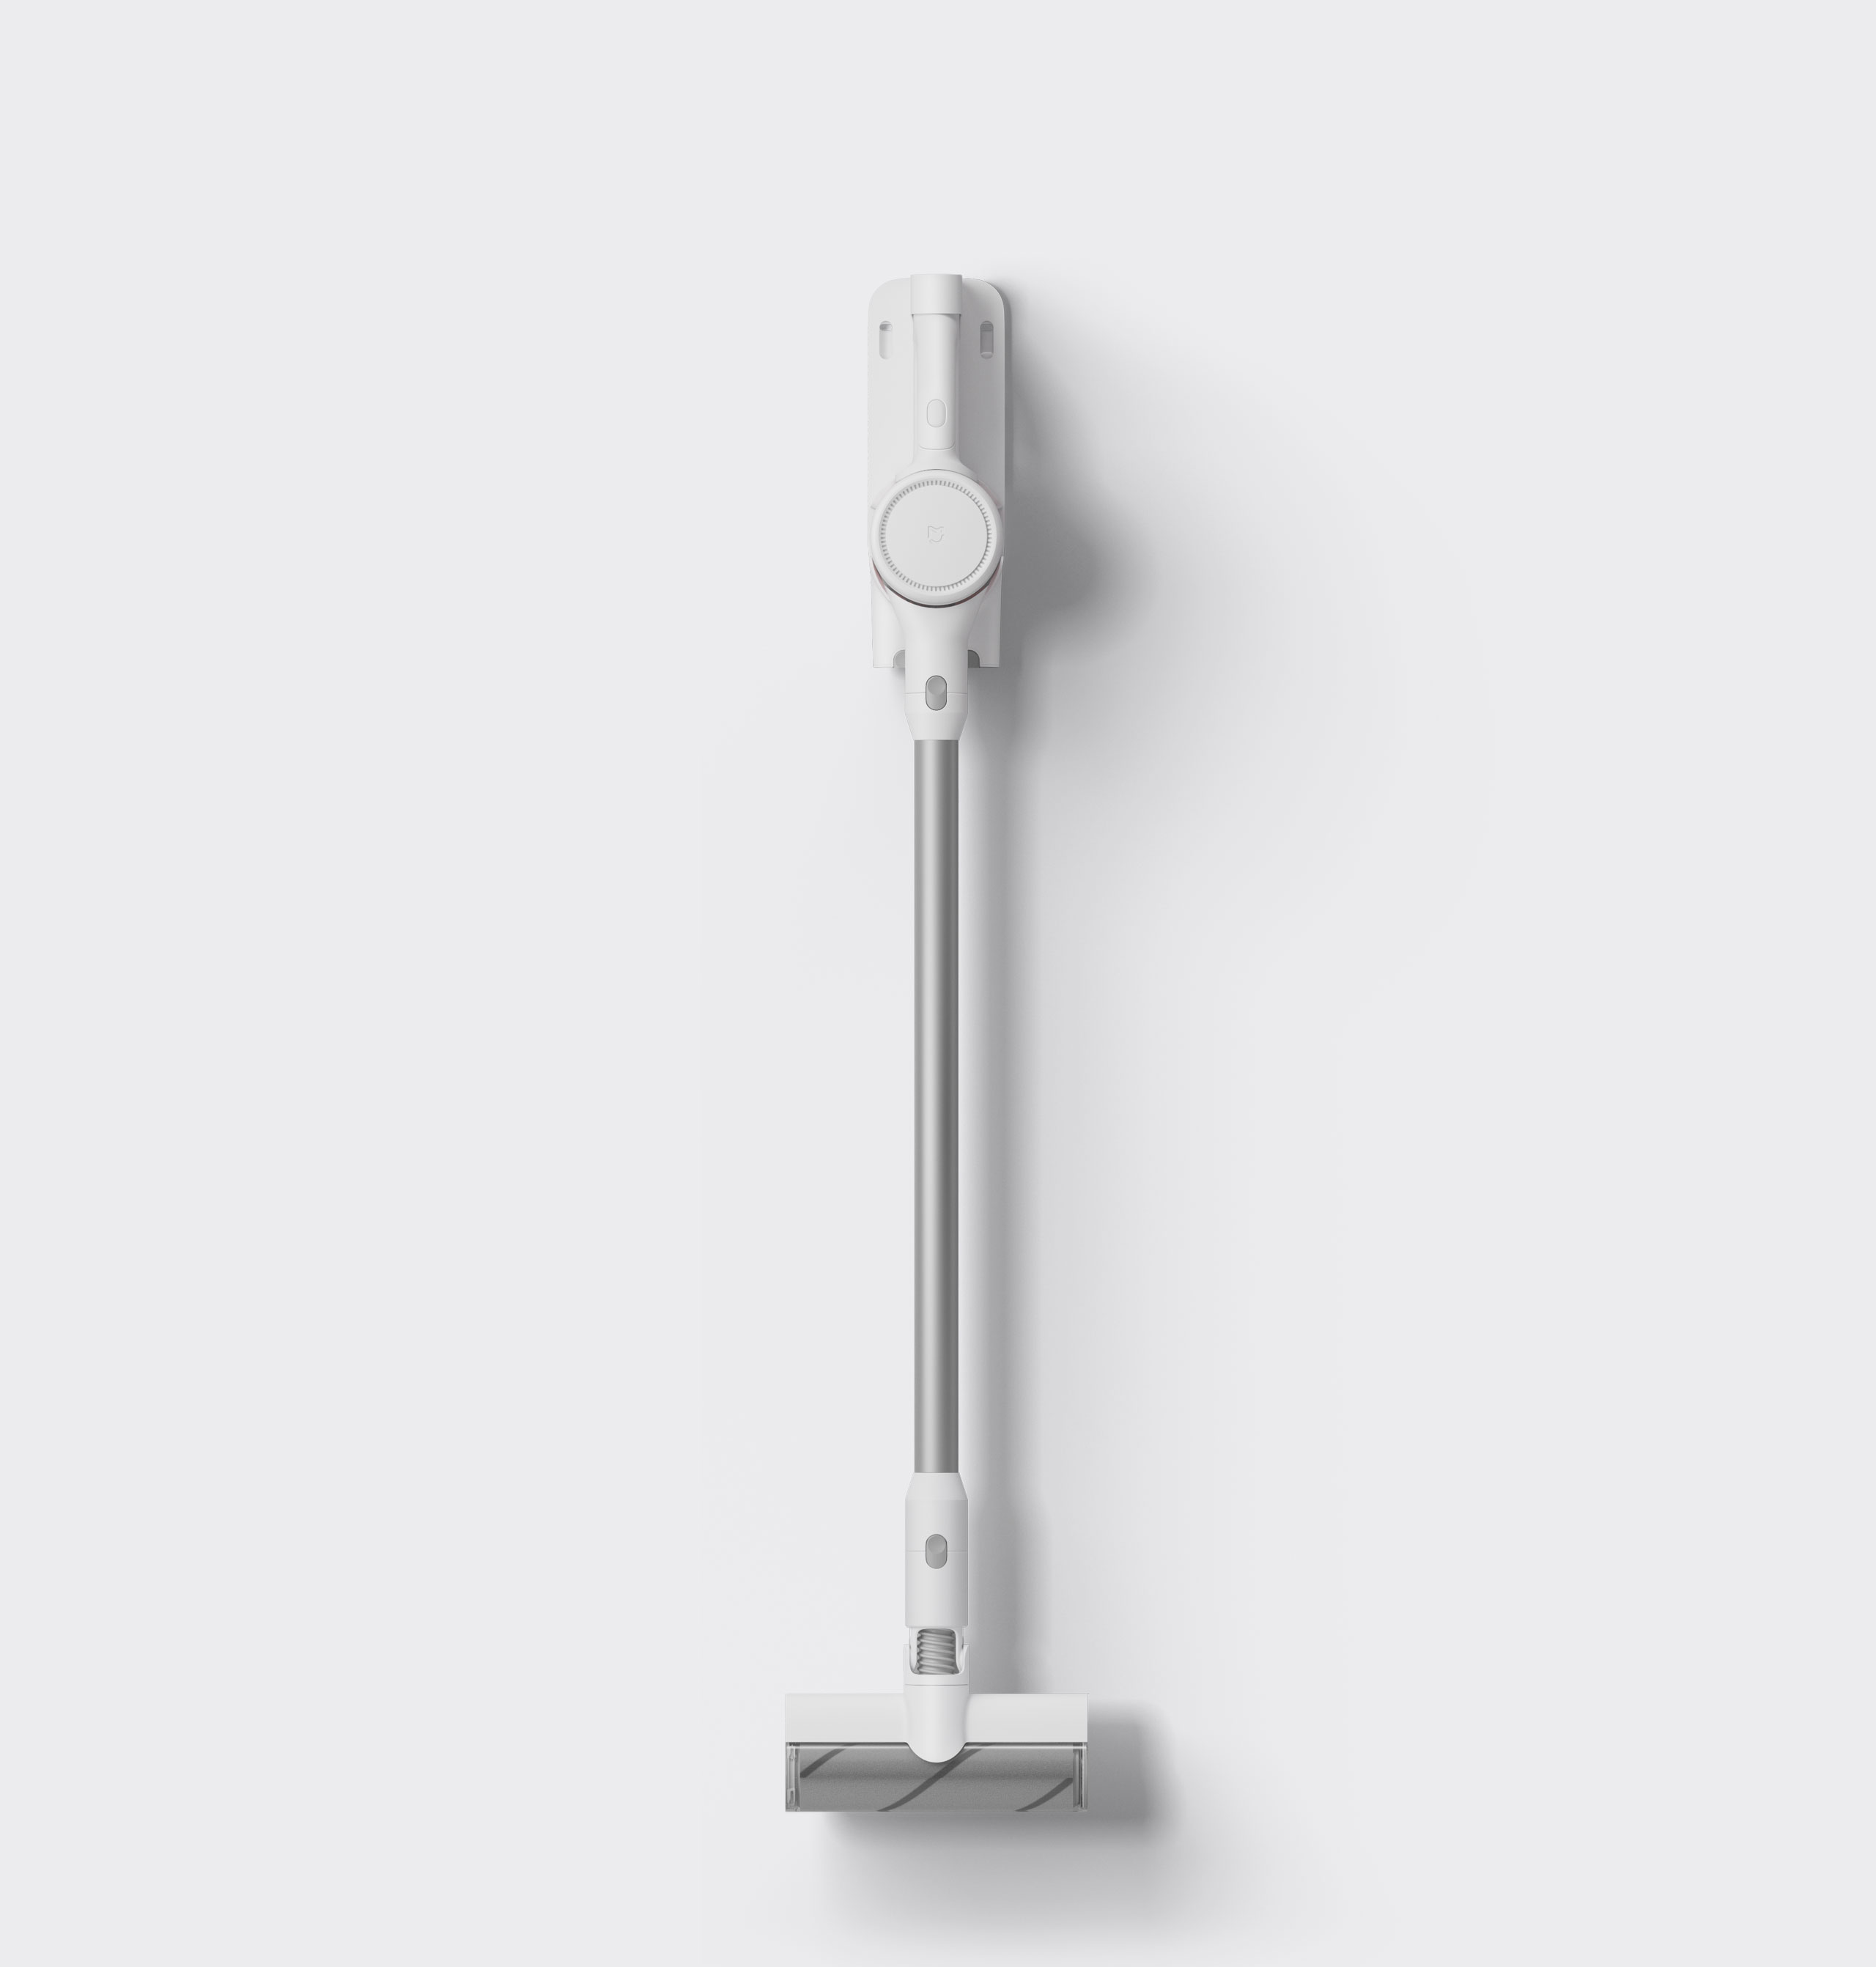 Xiaomi Handheld Vacuum Cleaner Pro G10